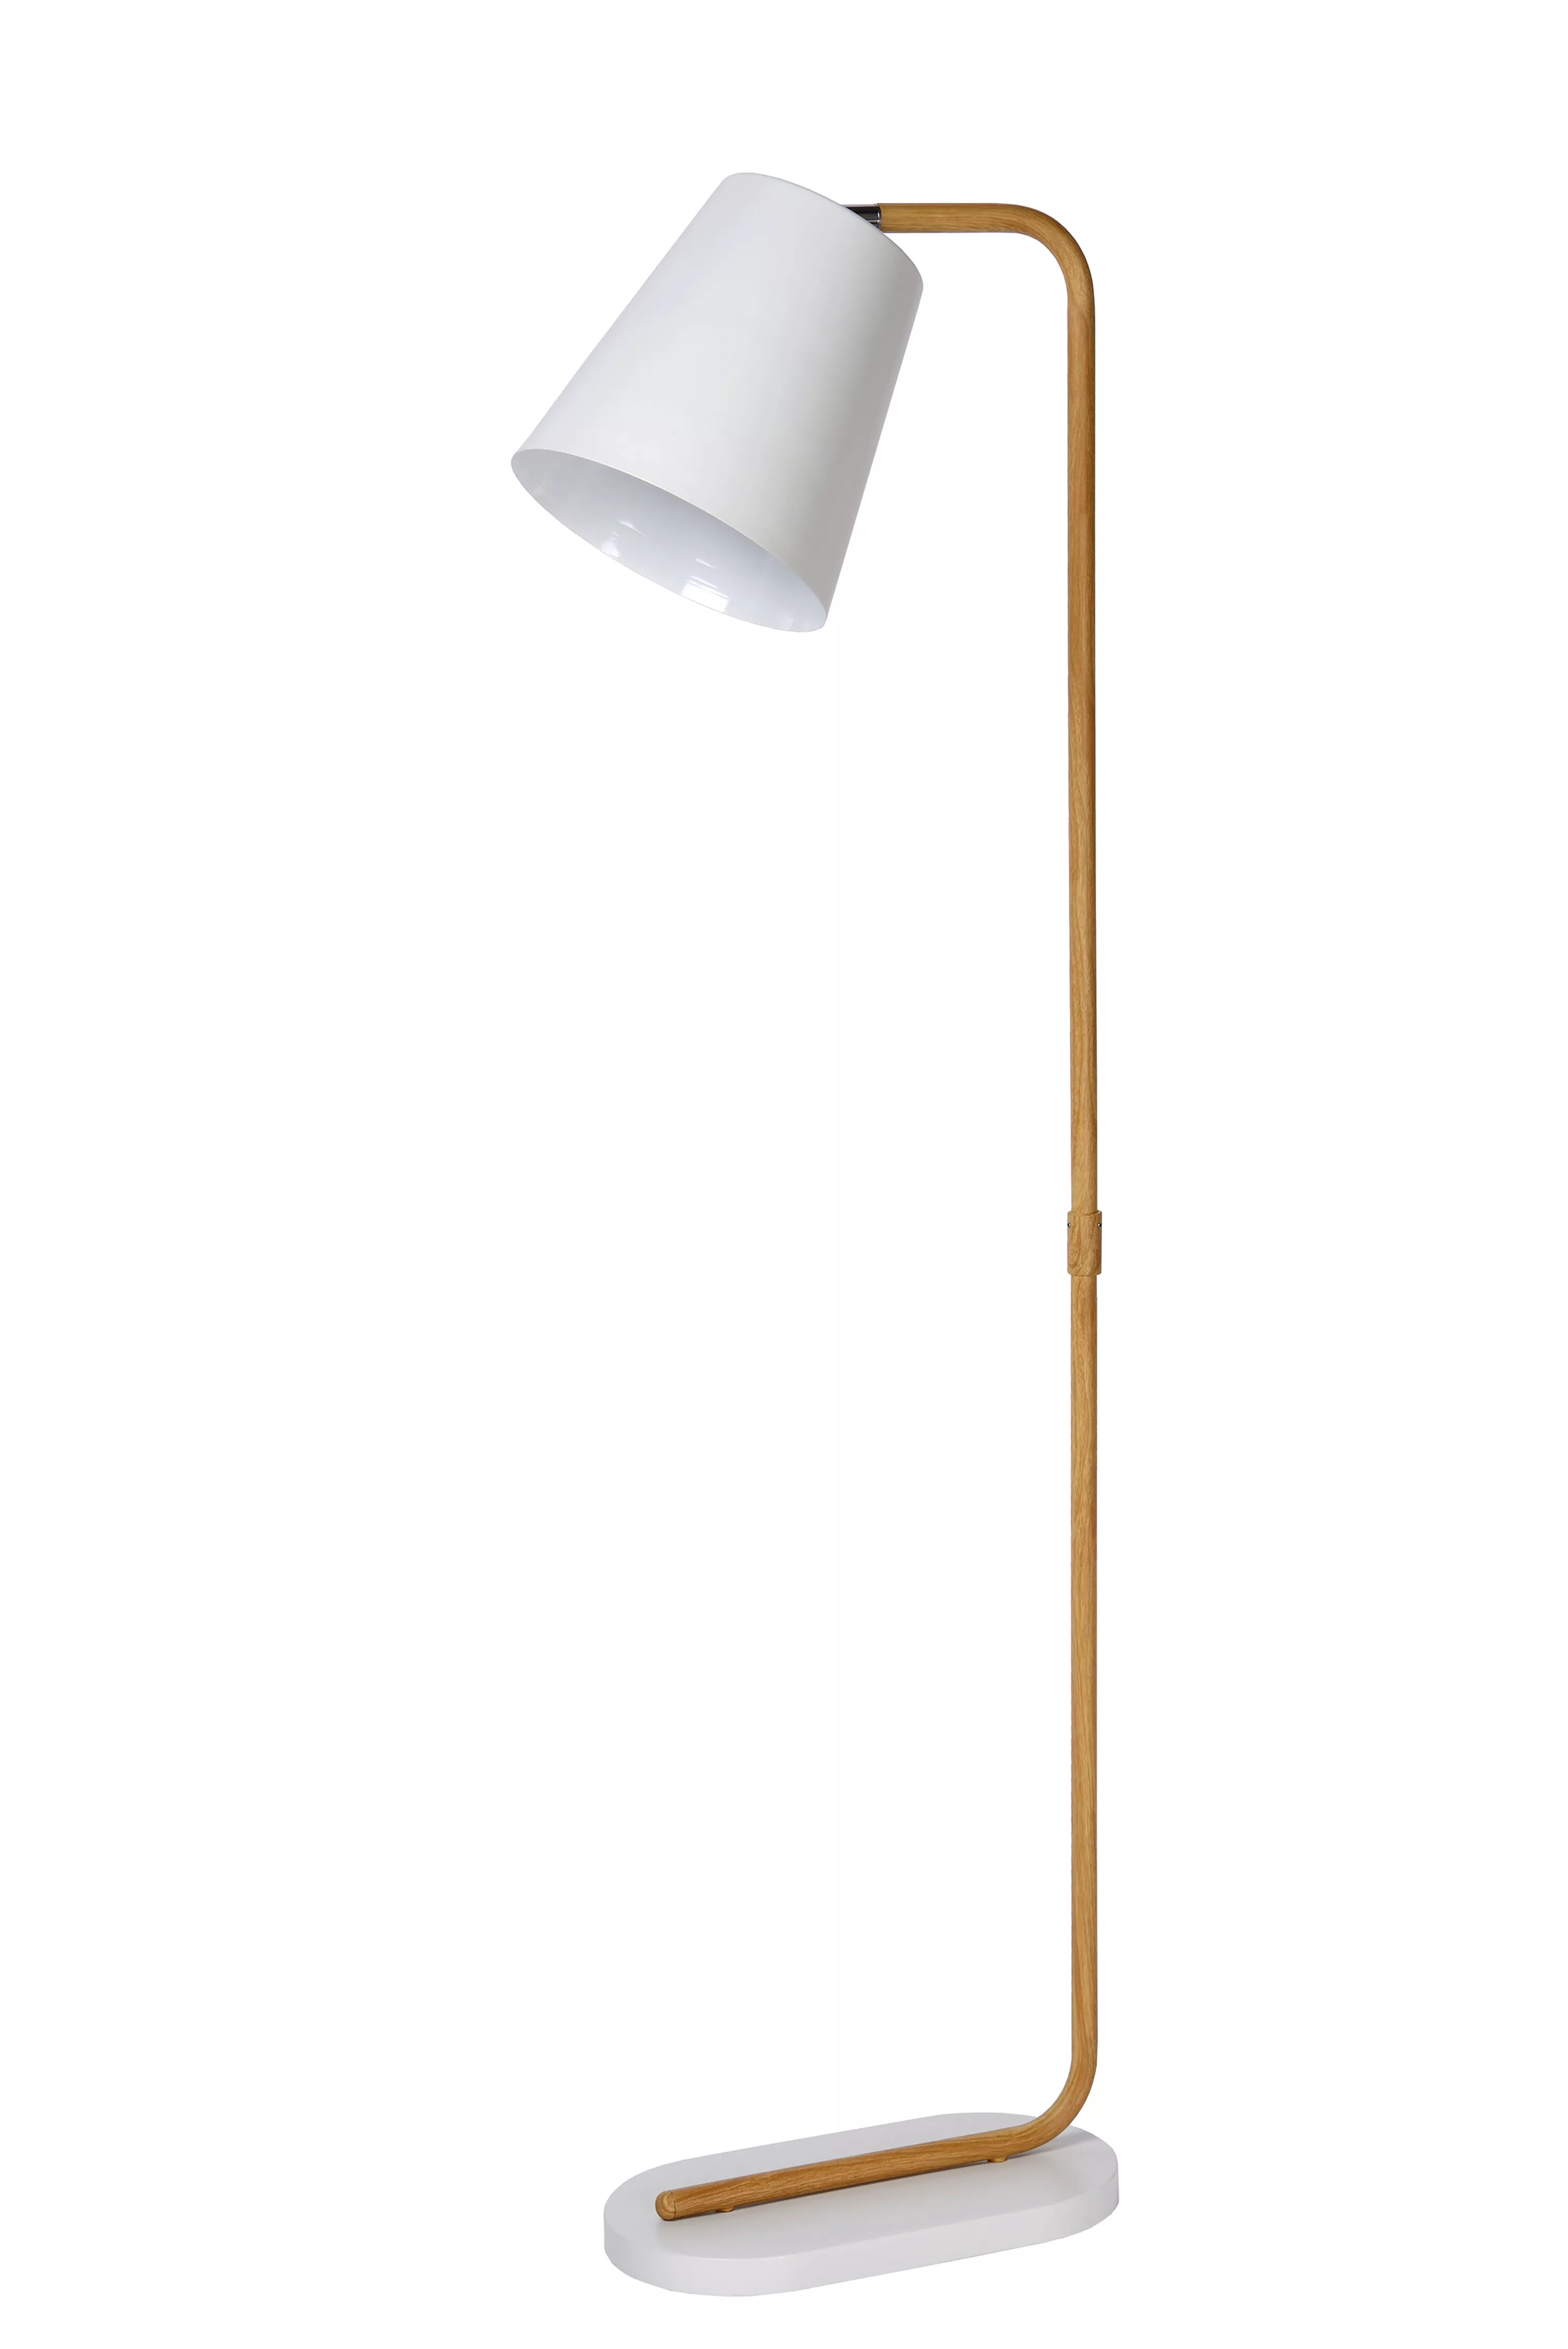 Stojacia lampa Cona v bielom vyhotovení s kovovou tyčou s motívom dreva a otočným kĺbom na jednoduché nastavenie tienidla.